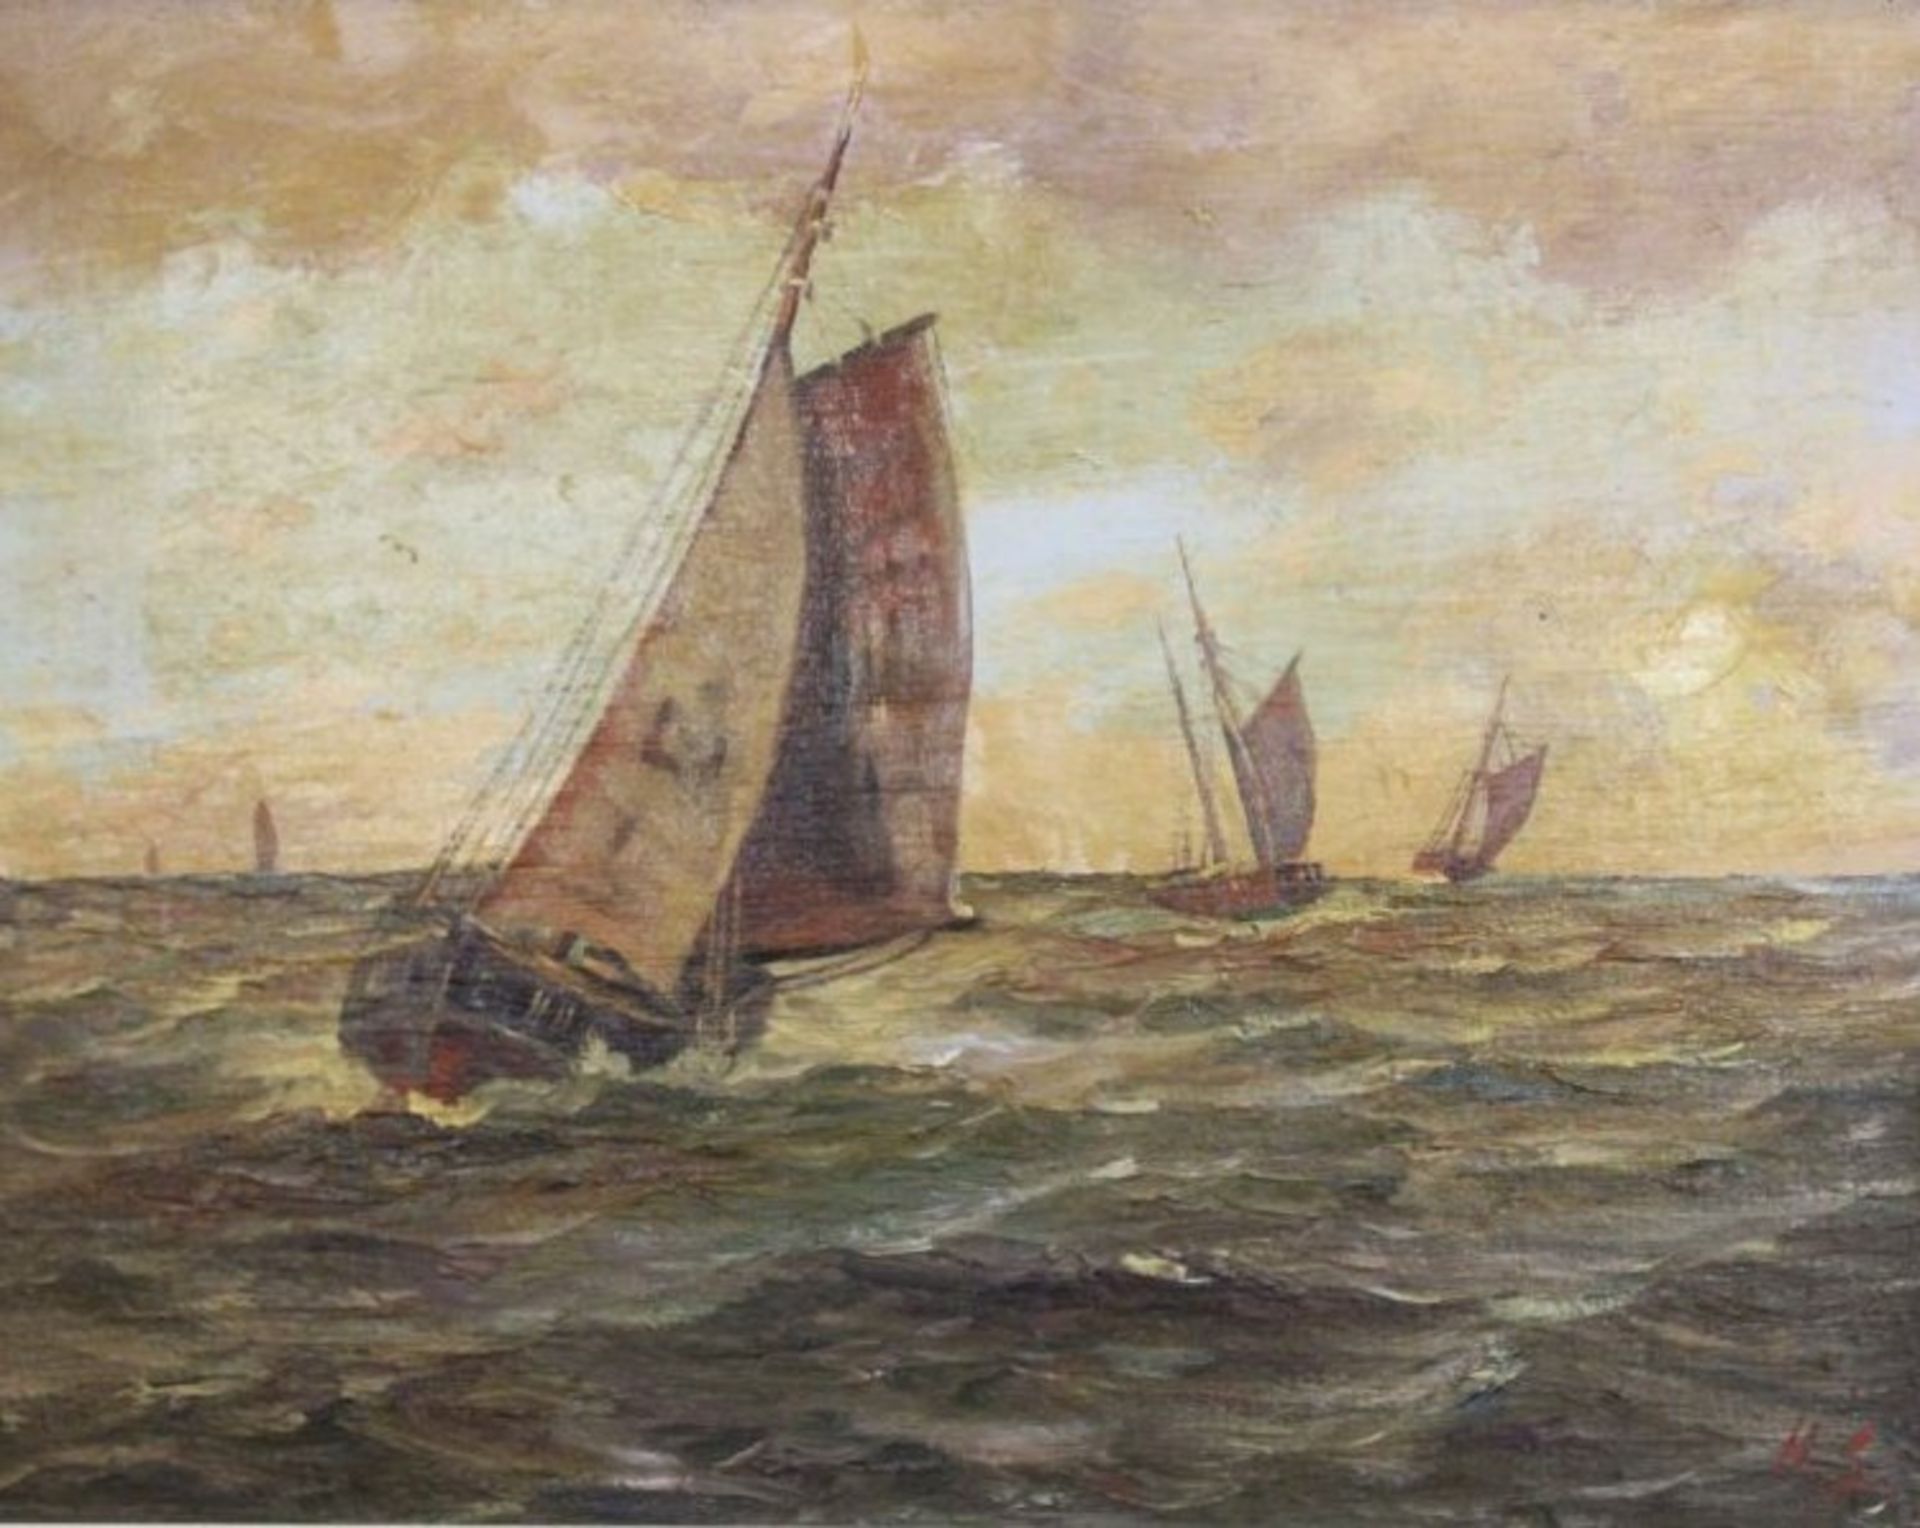 H.S., Fischerboote, verso unleserl. betitelt, Öl/Leinwand, gerahmt, RG 60 x 74cm.